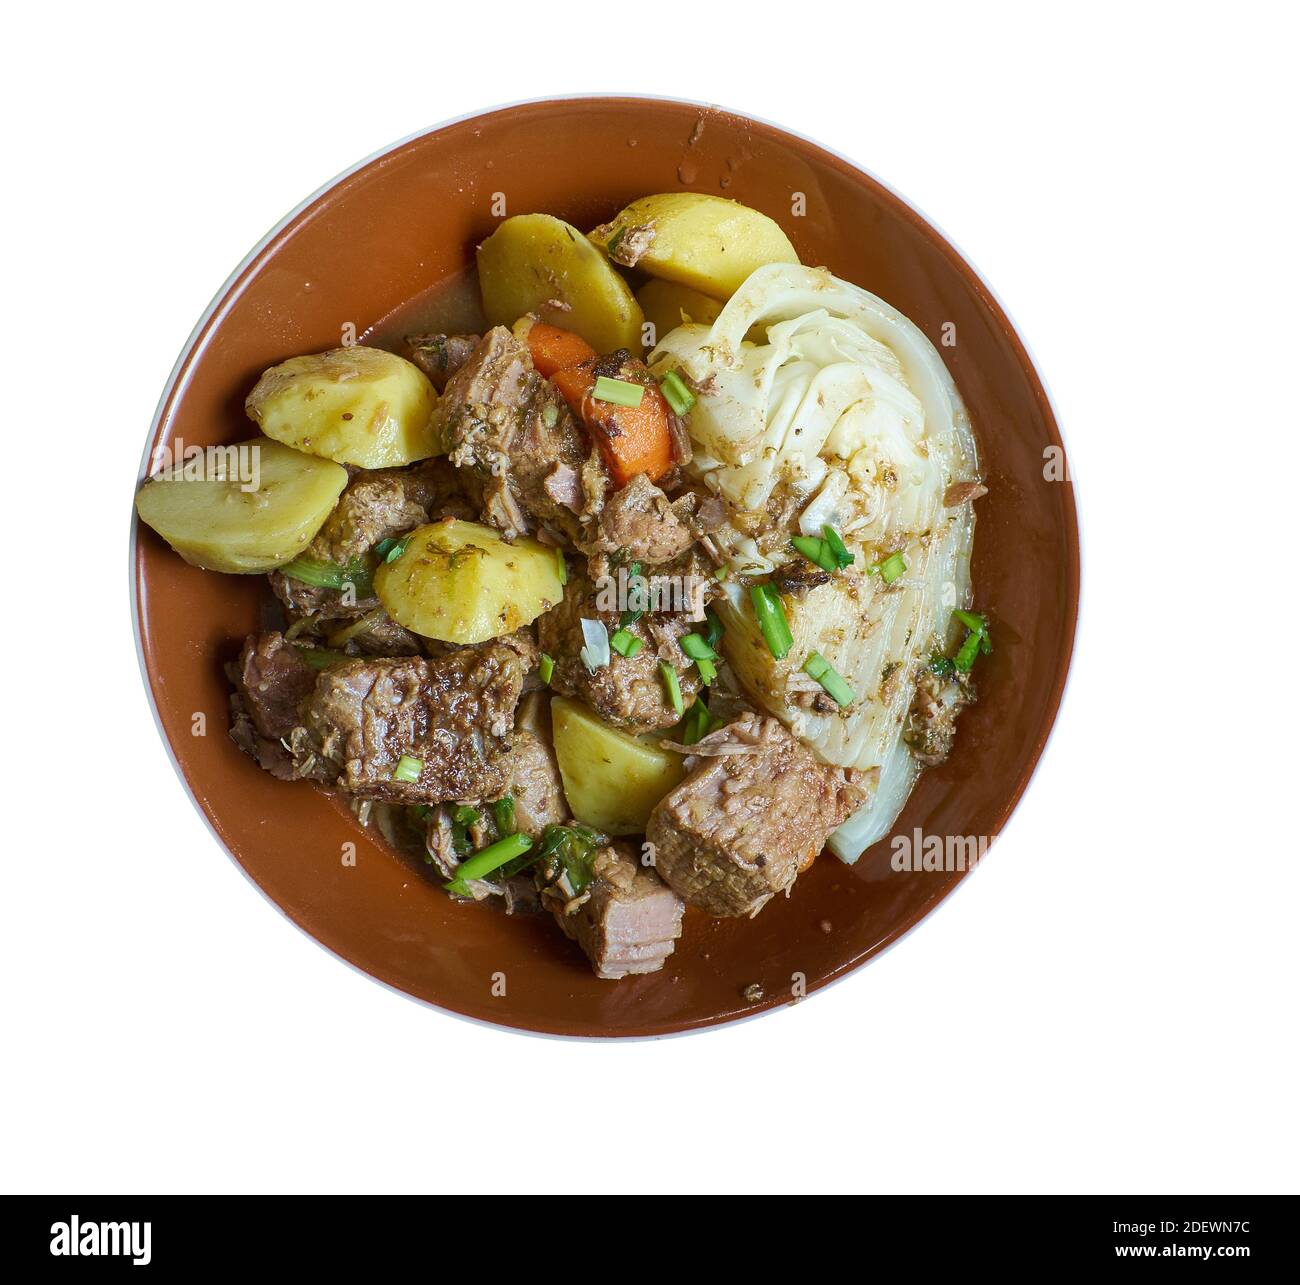 Licki lonac - traditioneller Eintopf aus Primorje und Lika, Kroatien der geschmackvolle Eintopf kombiniert Fleischstücke wie Hammelfleisch, Lamm oder Rindfleisch mit verschiedenen Gemüsesorten Stockfoto